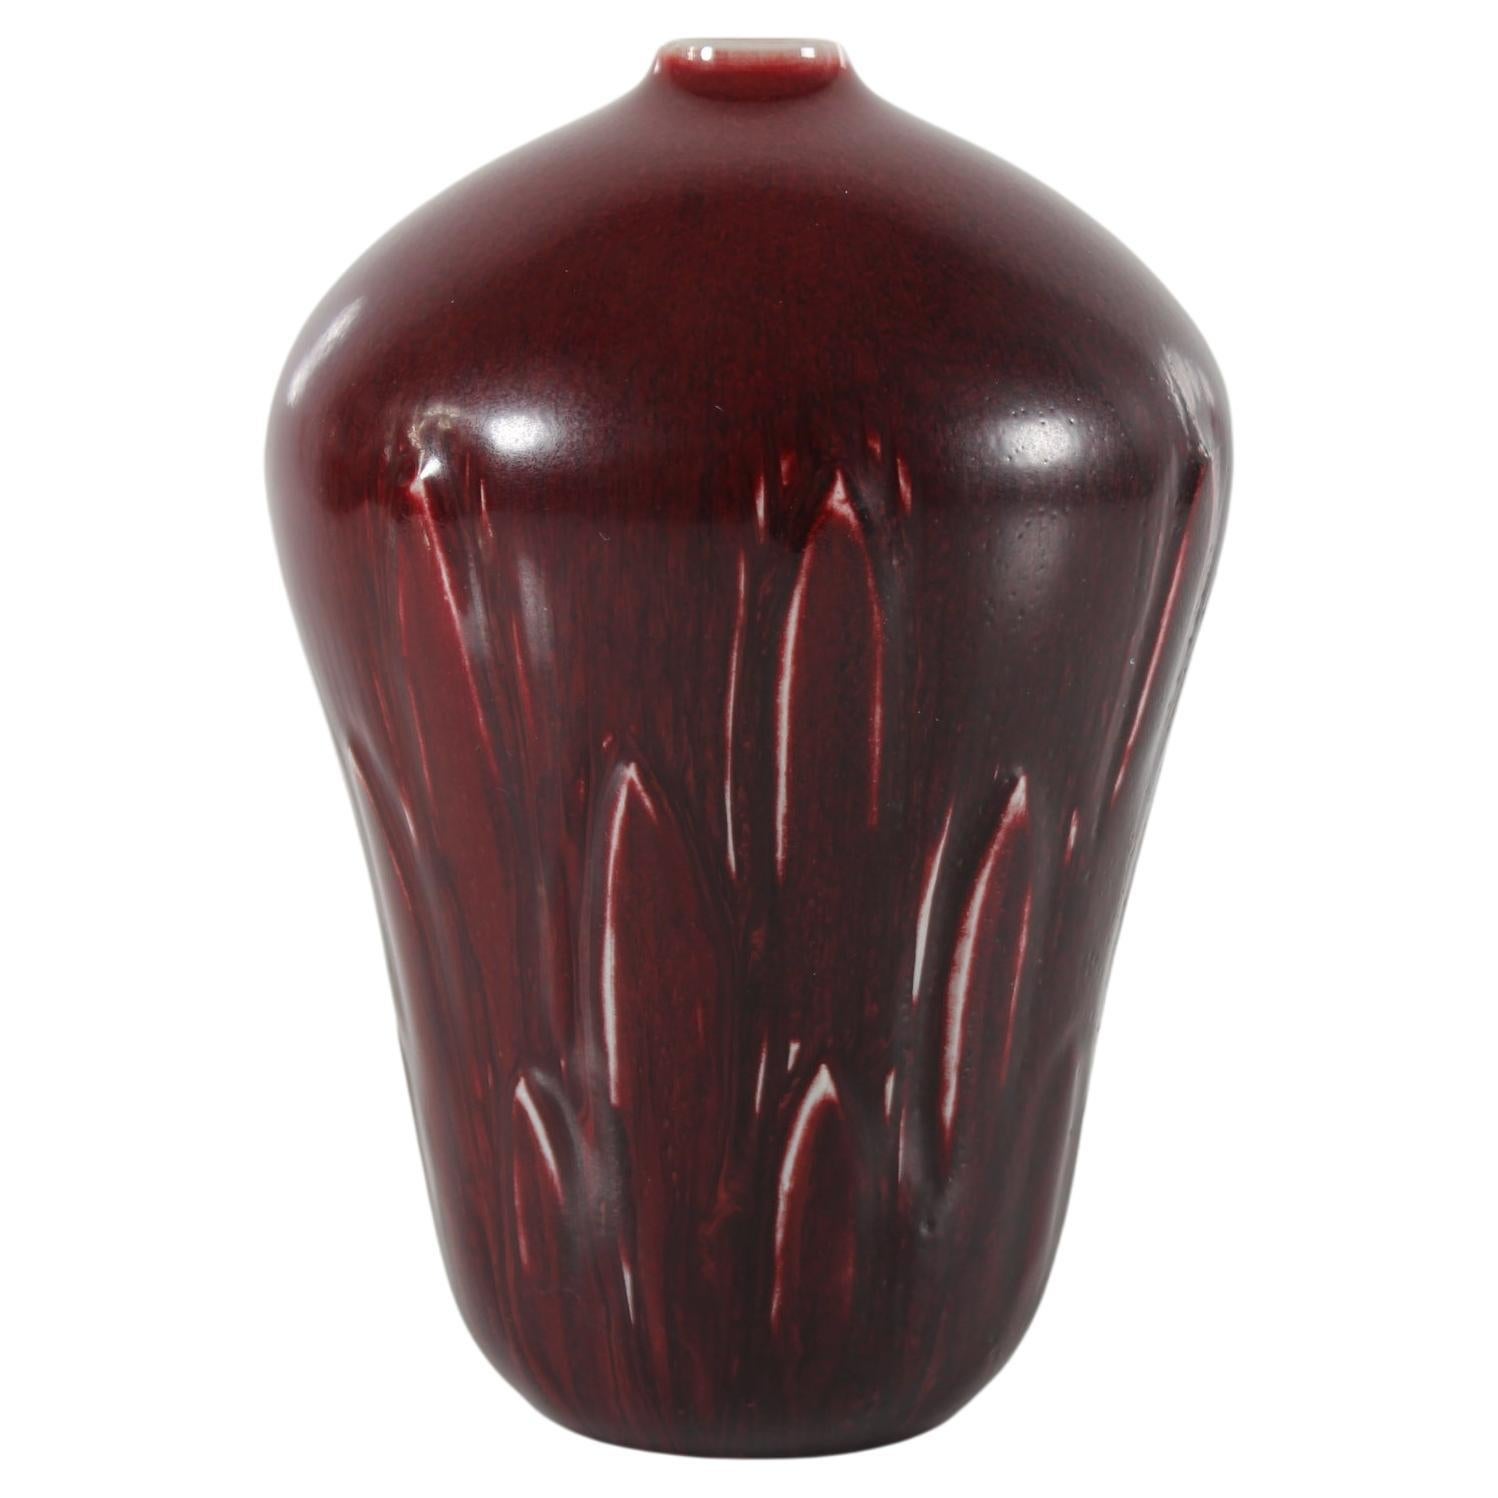 Grand vase du céramiste danois Gerd Bøgelund (1923-1987) pour Royal Copenhagen Denmark. 
Il est fabriqué en grès dans les années 1960. 

Le vase est décoré d'une ornementation de feuilles incisées et recouvert d'une glaçure sang-de-bœuf.

Enseigne